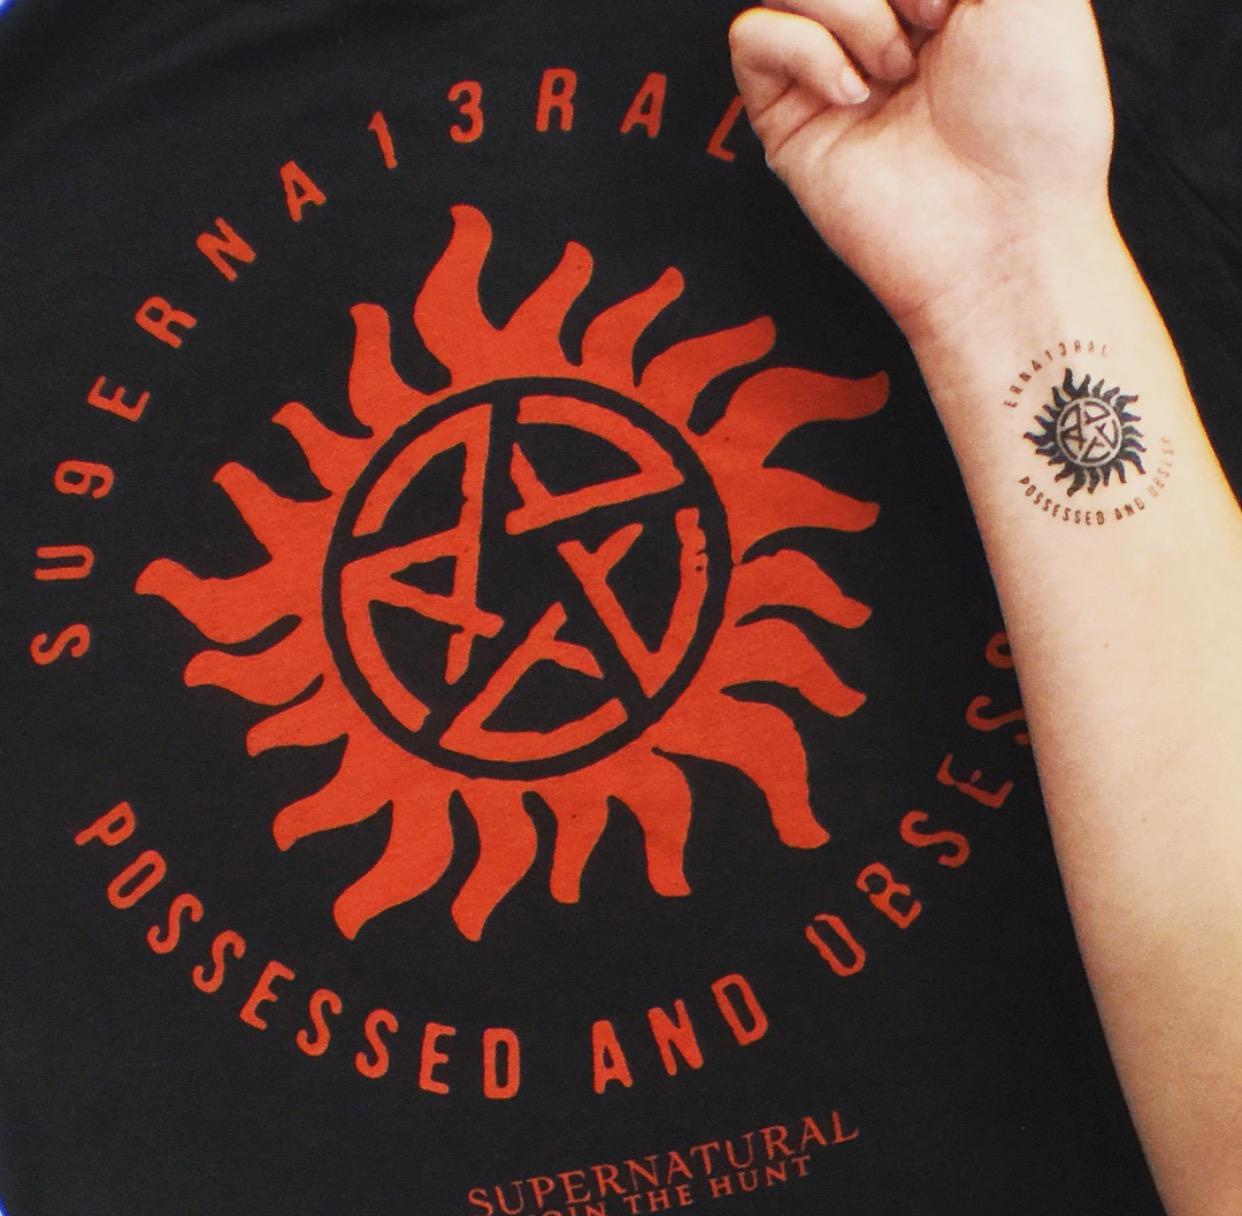 Supernatural tattoo by Kinag on DeviantArt